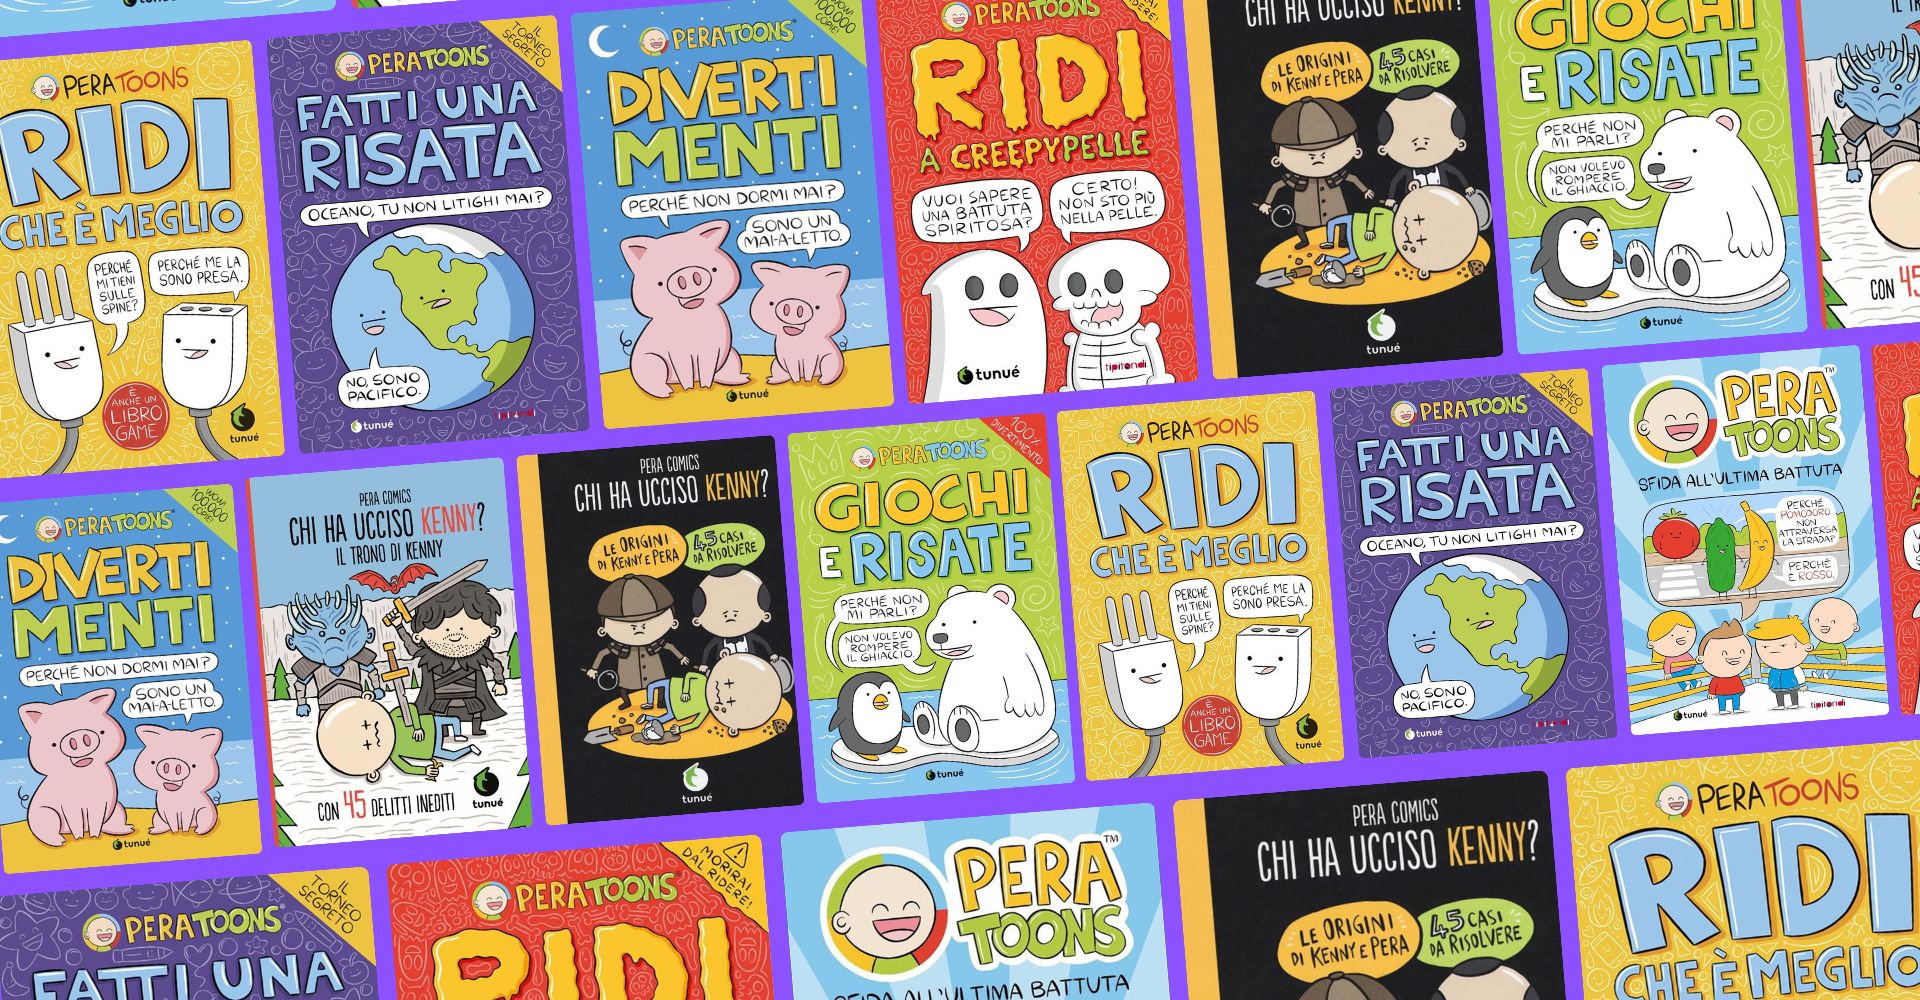 Libro Peratoons “ridi che e meglio” - Libri e Riviste In vendita a Milano